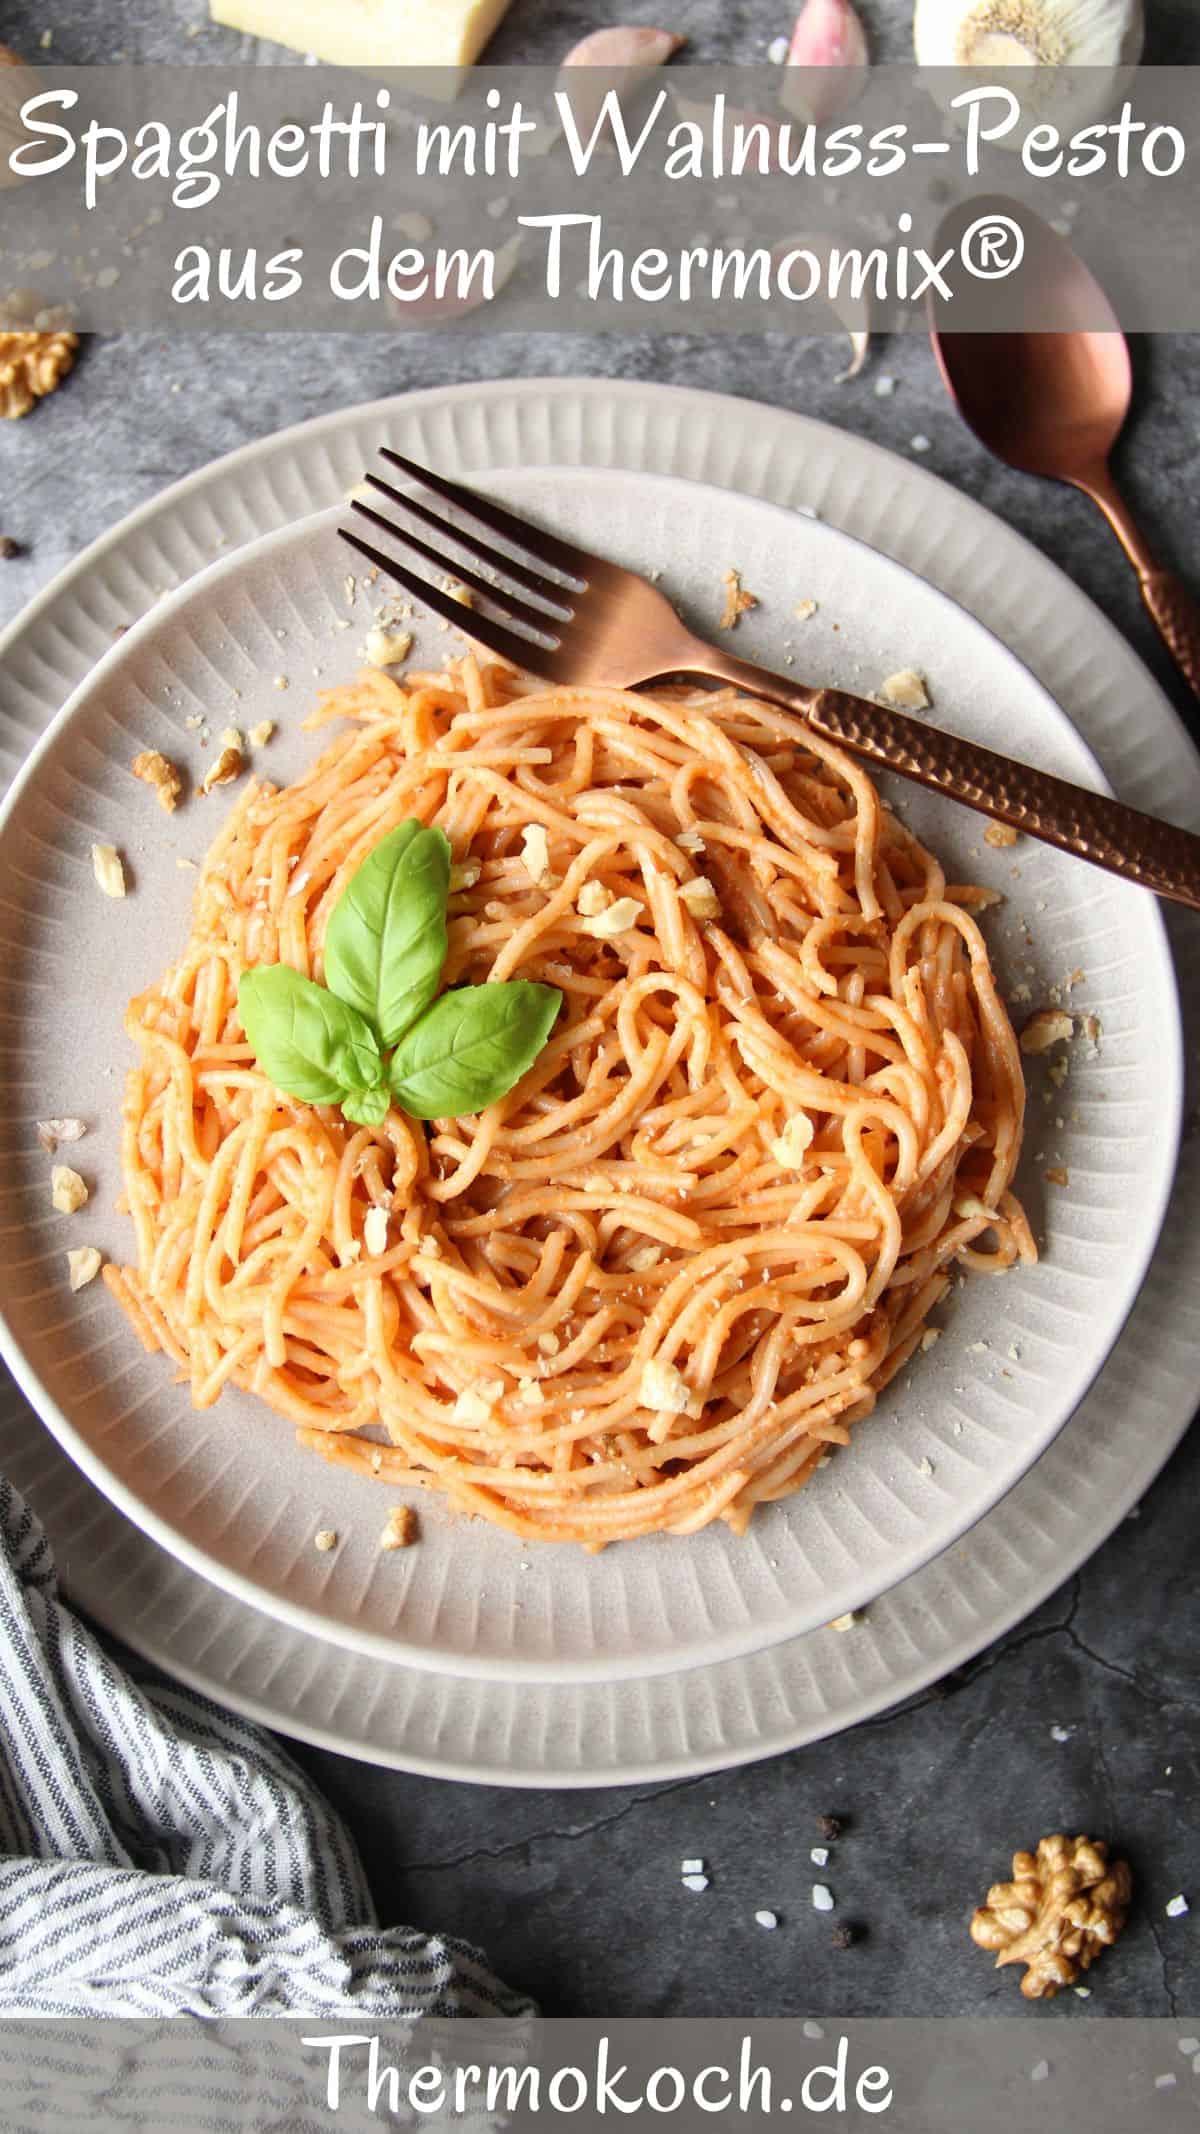 Ein Teller mit Spaghetti mit Walnuss-Pesto und Besteck.